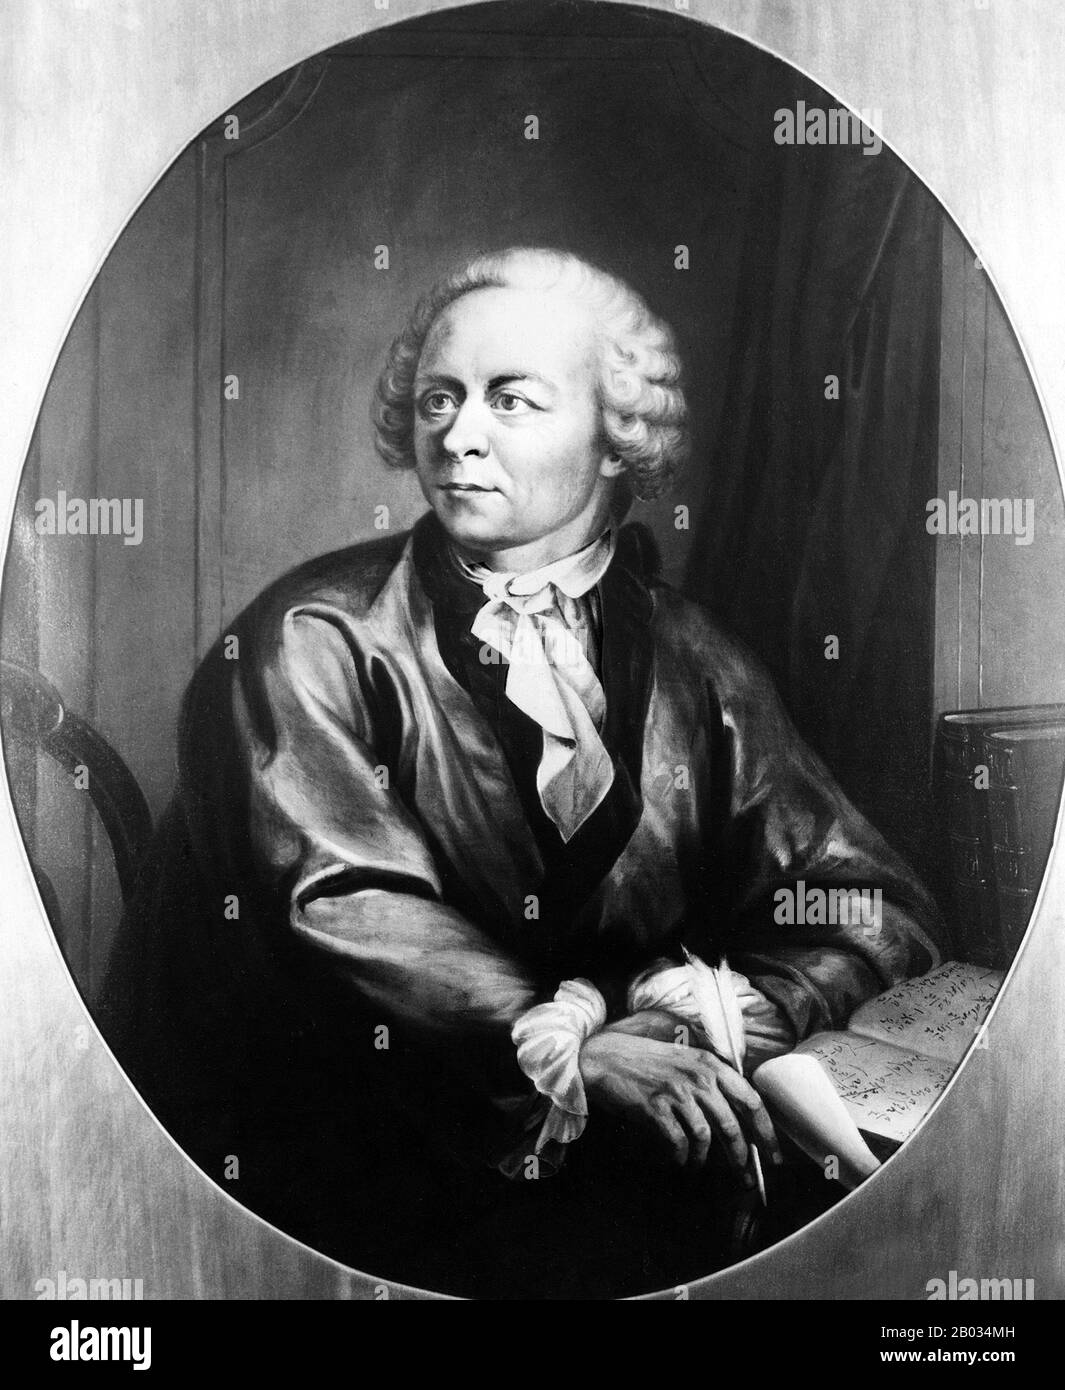 Leonhard Euler (15 aprile 1707 – 18 settembre 1783) è stato un matematico, fisico, astronomo, logista e ingegnere svizzero, che ha fatto scoperte importanti e influenti in molti rami della matematica come il calcolo infinitesimale e la teoria del grafico, dando al contempo contributi pionieristici a diversi rami come la topologia e la teoria dei numeri analitici. Ha anche introdotto gran parte della terminologia e della notazione matematica moderna, in particolare per l'analisi matematica, come la nozione di funzione matematica. È anche noto per il suo lavoro in meccanica, fluidodinamica, ottica, astronomia, A. Foto Stock